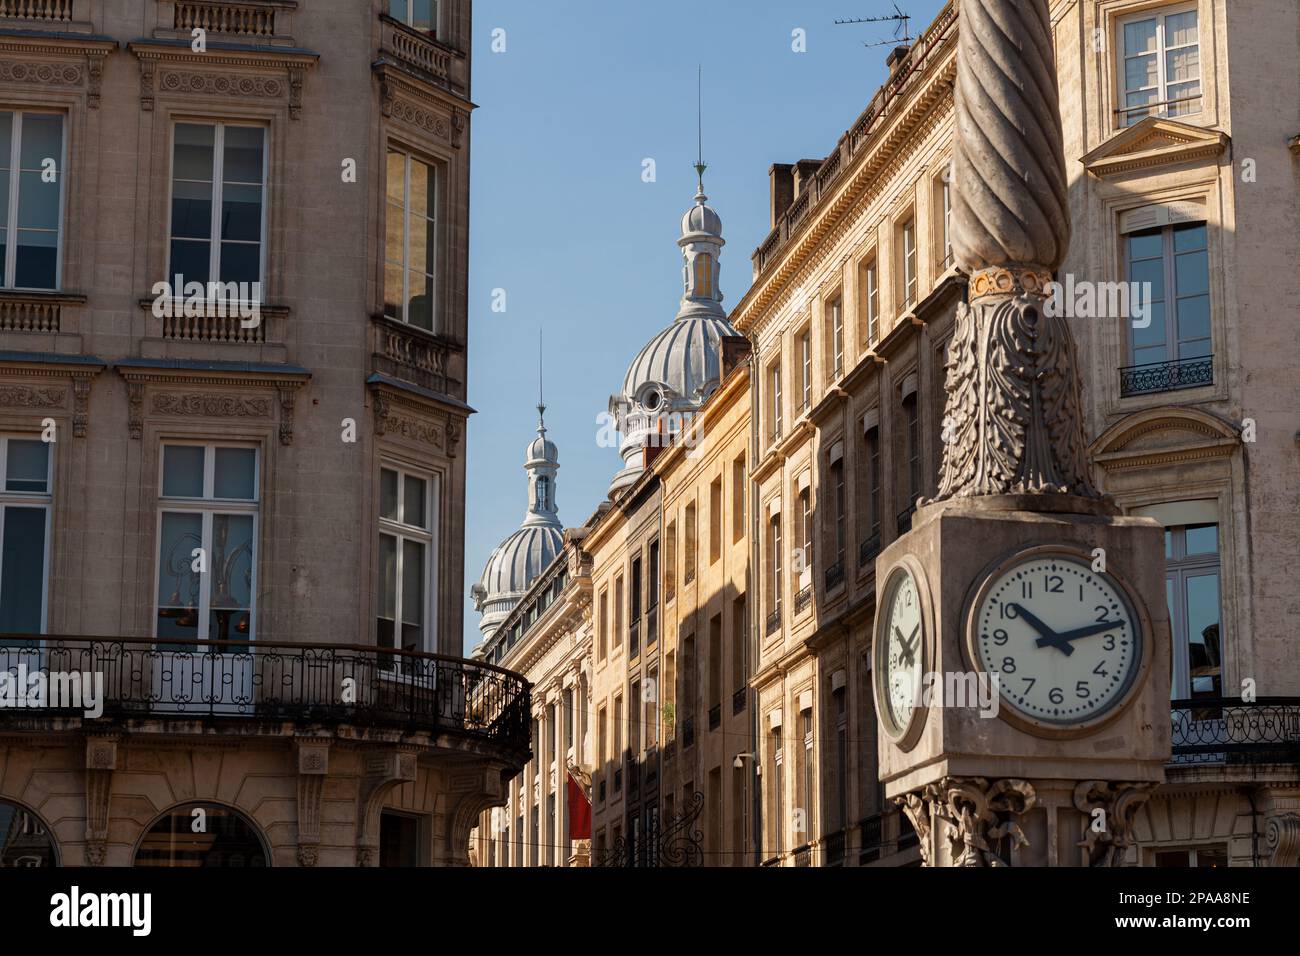 Vue sur l'ancienne horloge ancienne d'époque dans les rues de Bordeaux, France Banque D'Images